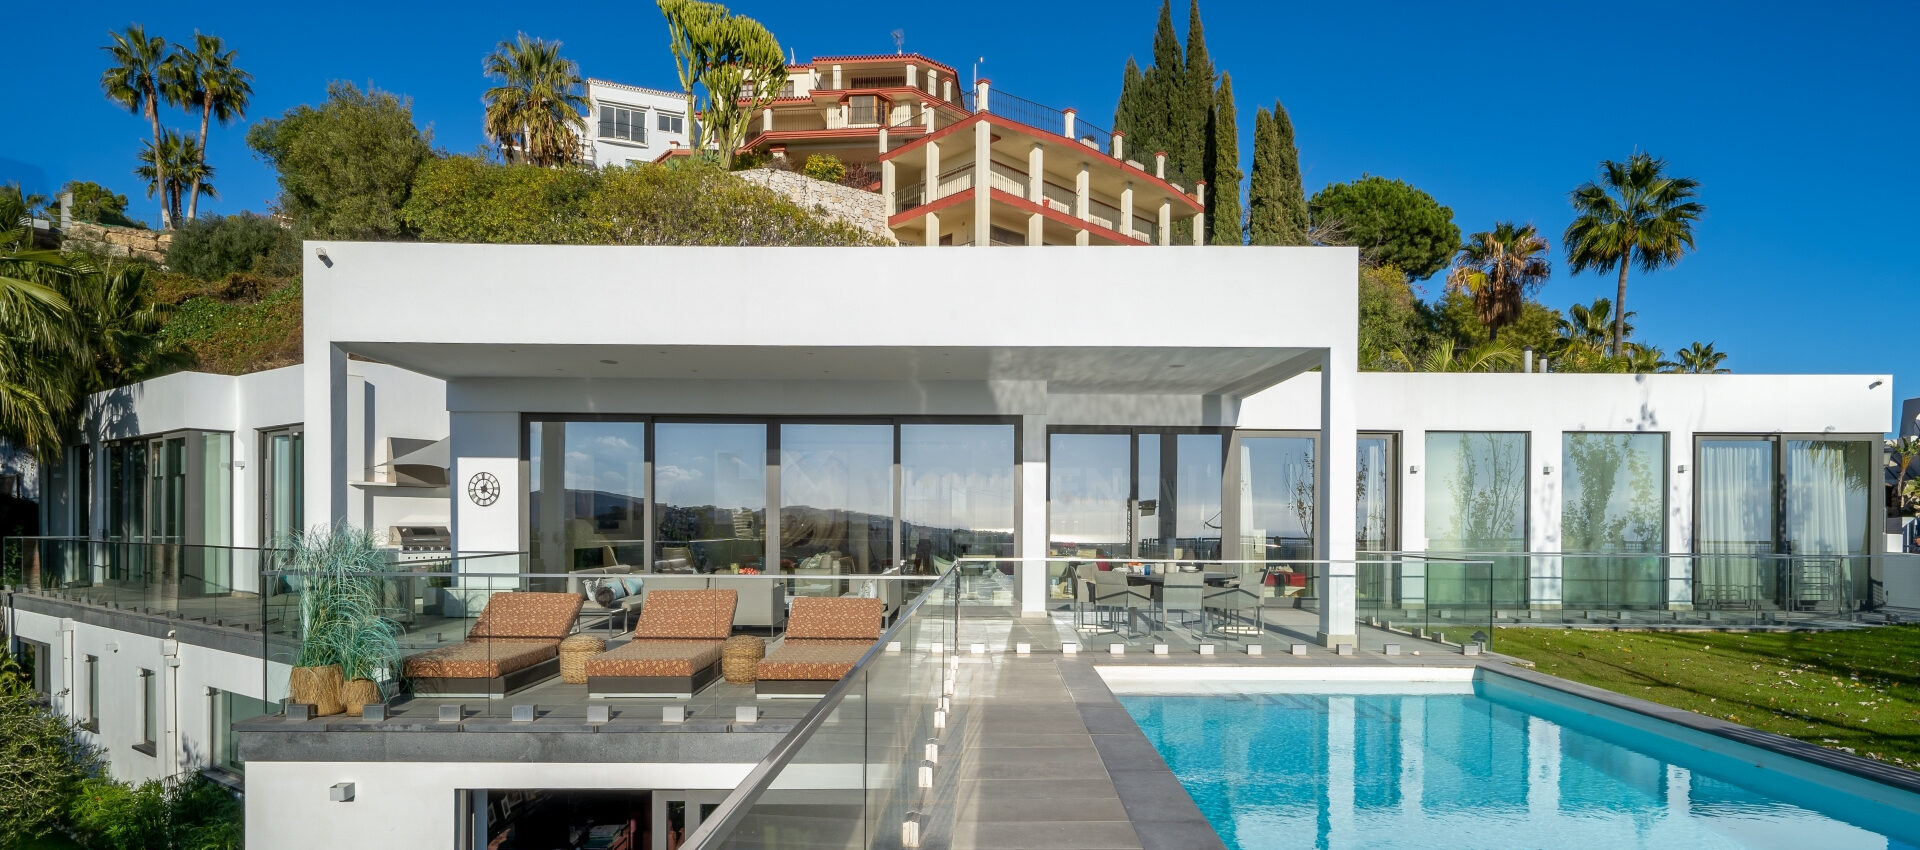 Moderna villa con espectaculares vistas panorámicas y al mar